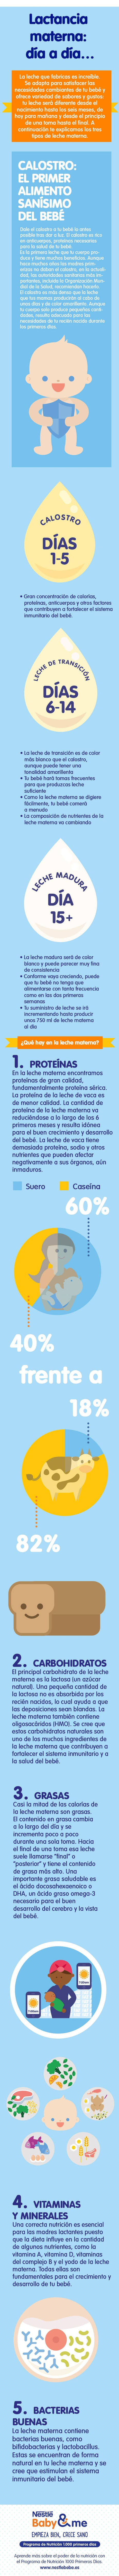 Infografía lactancia materna día a día - salud bebé